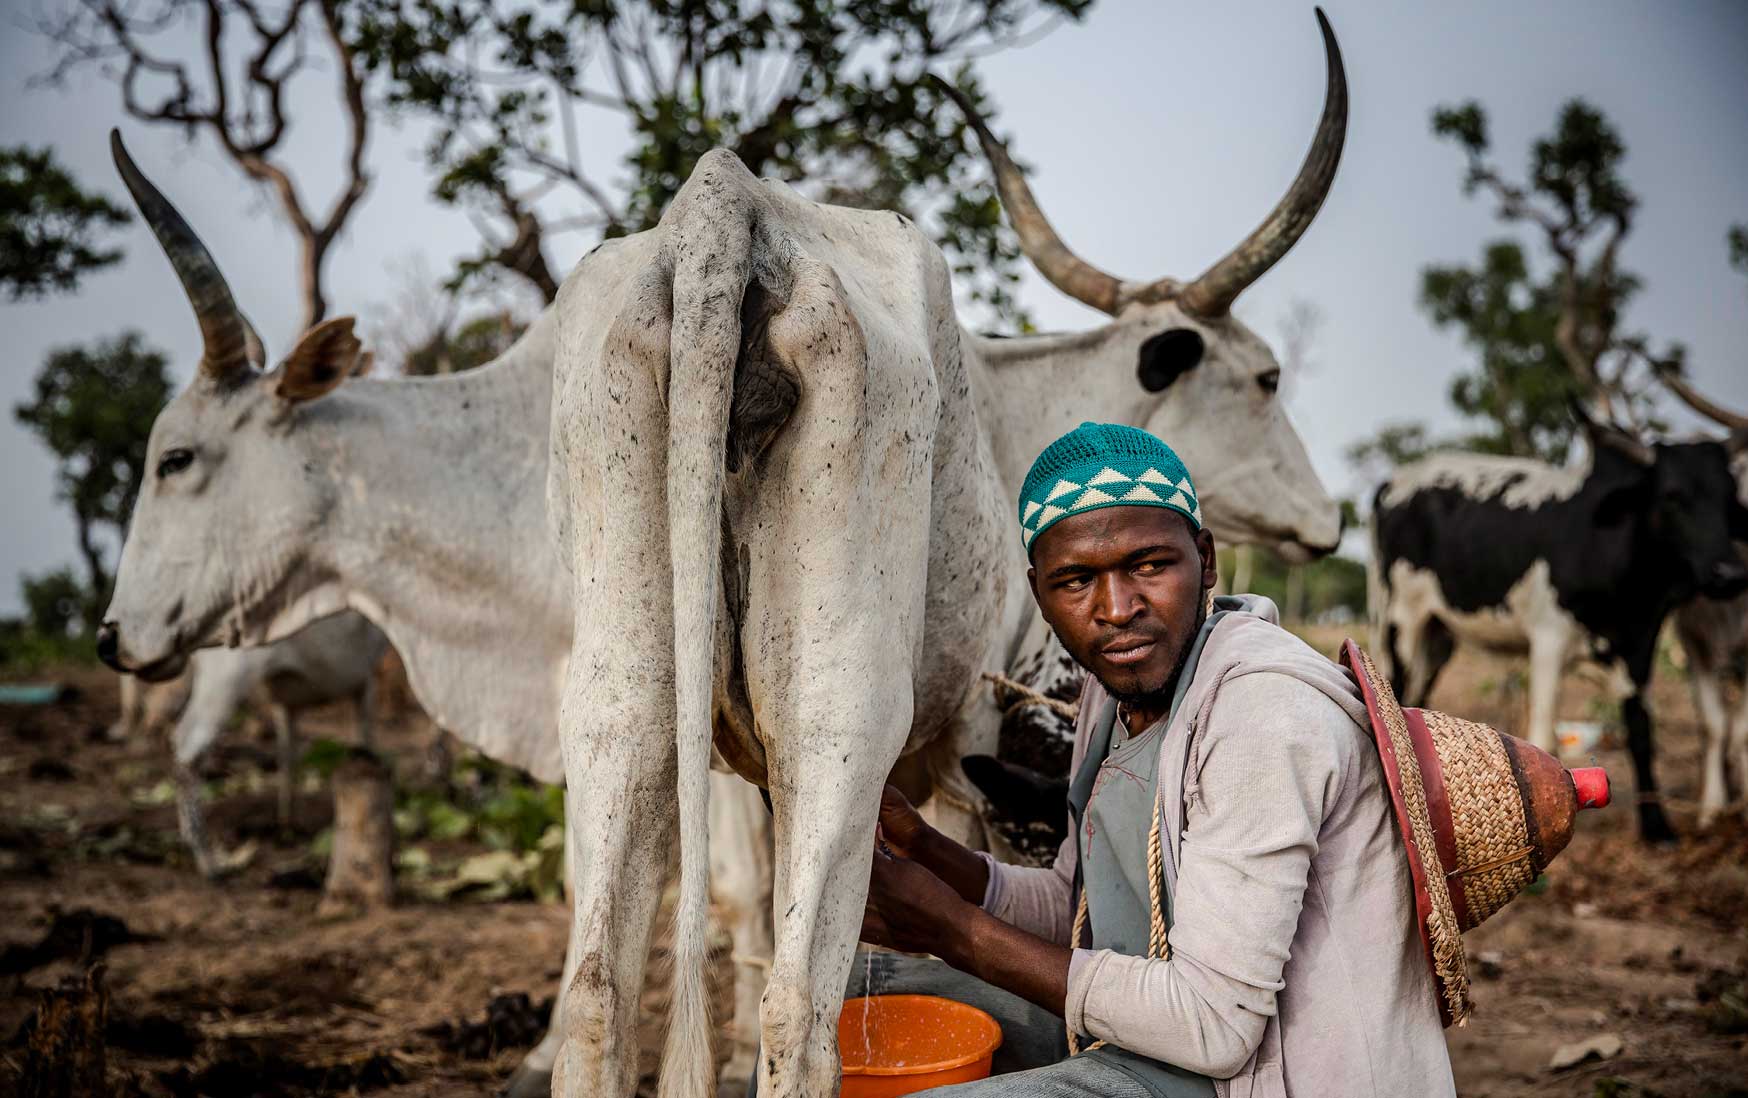 Milking a cow in Kachia